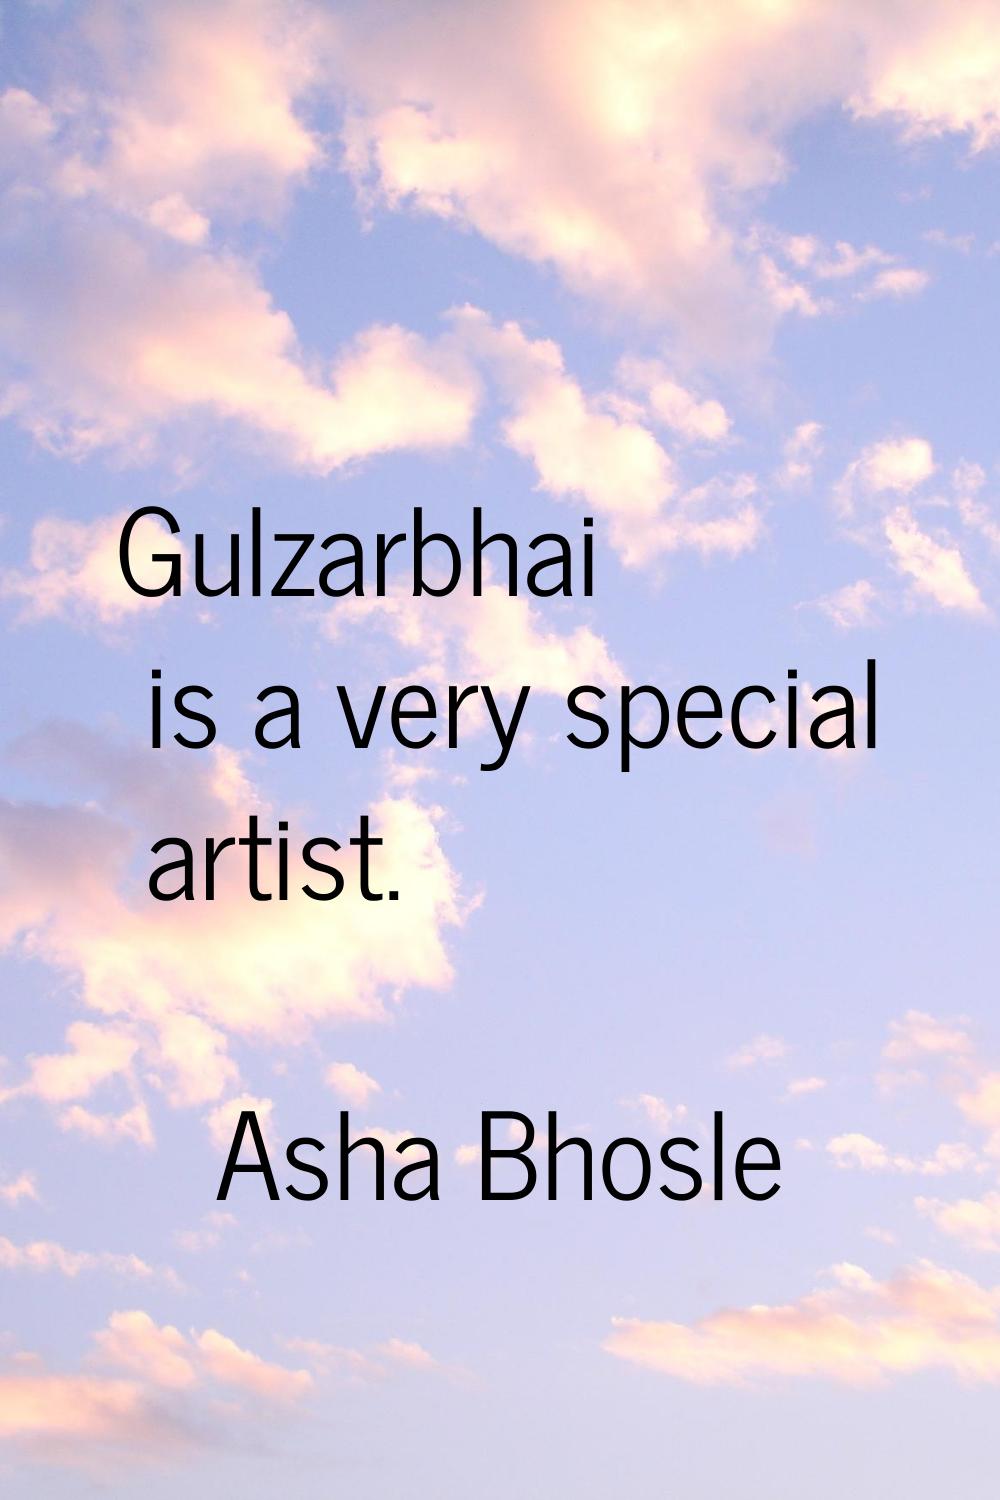 Gulzarbhai is a very special artist.